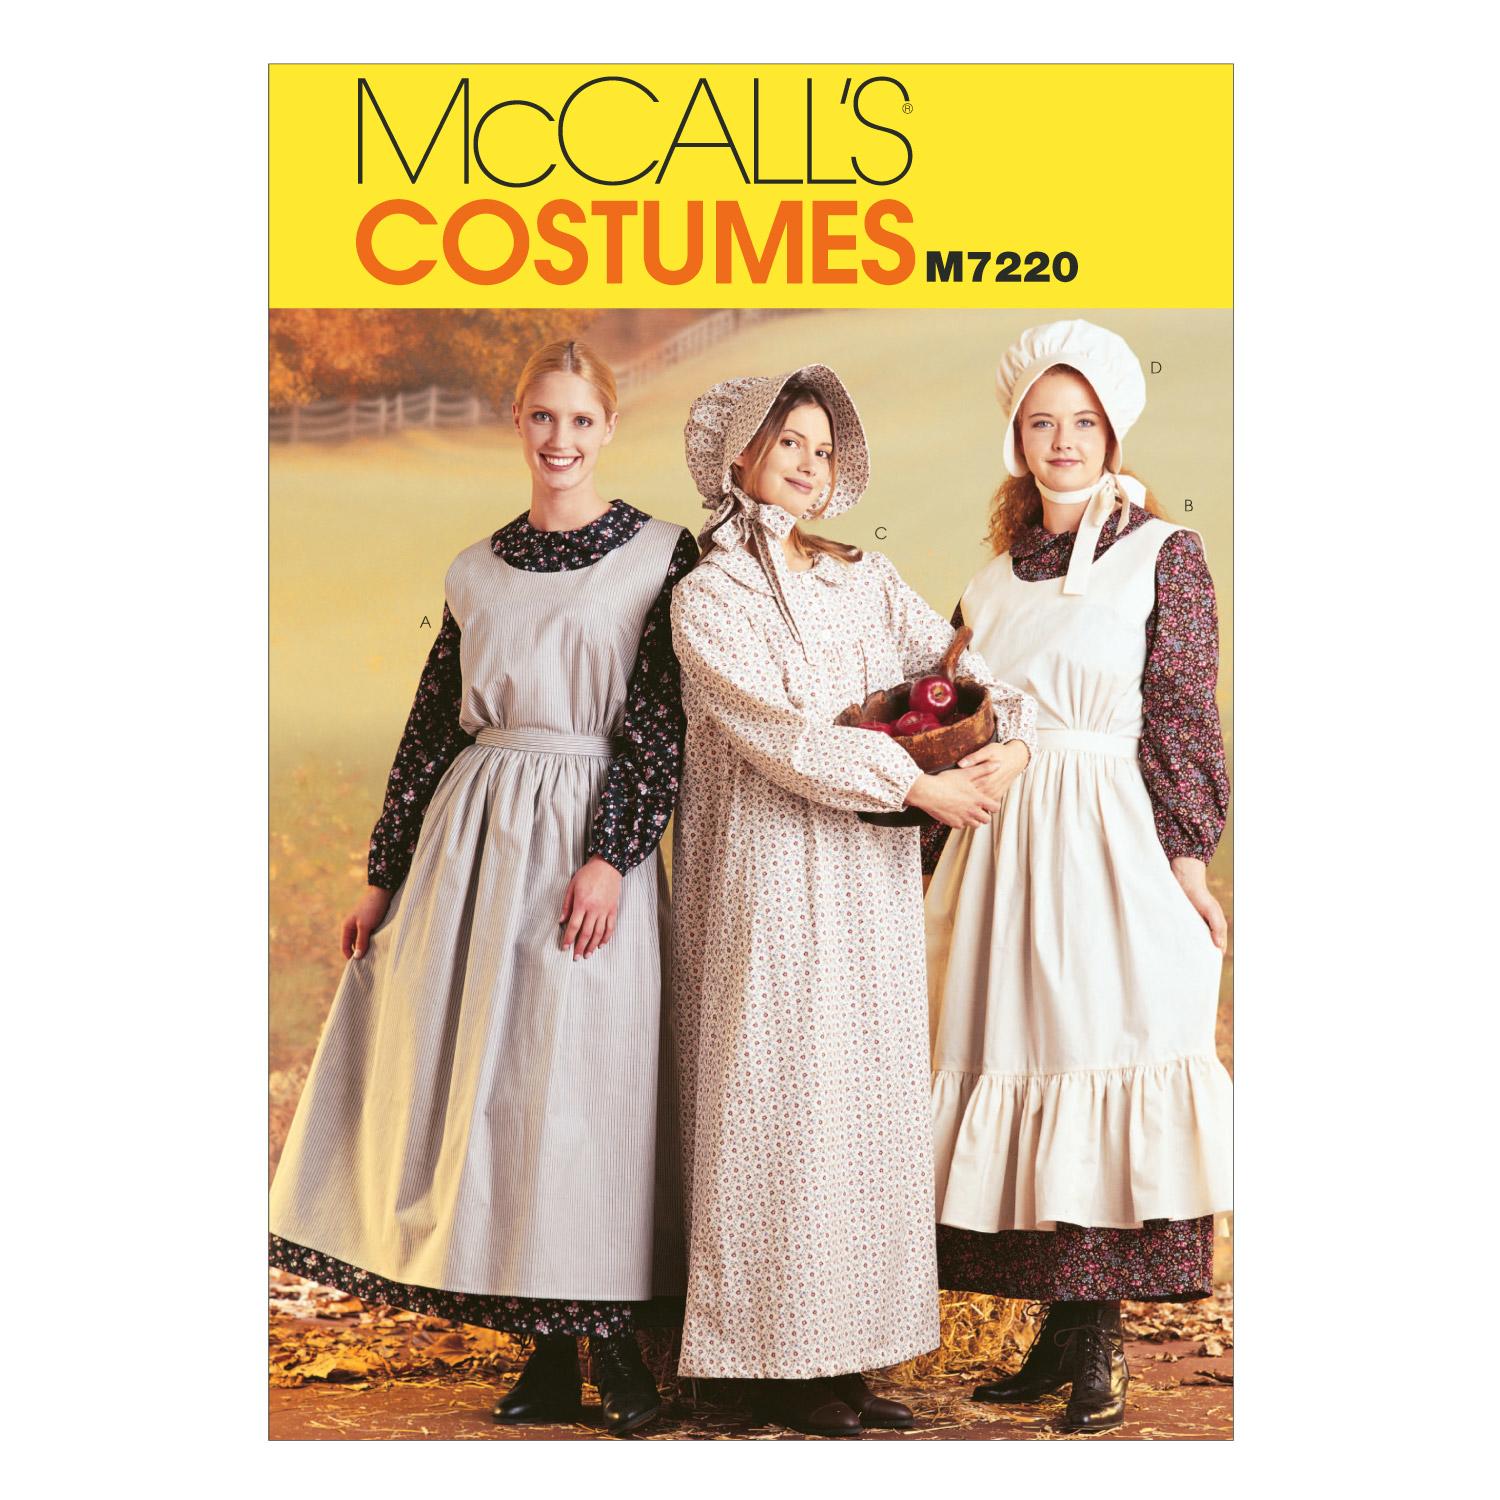 McCalls M7220 Costumes